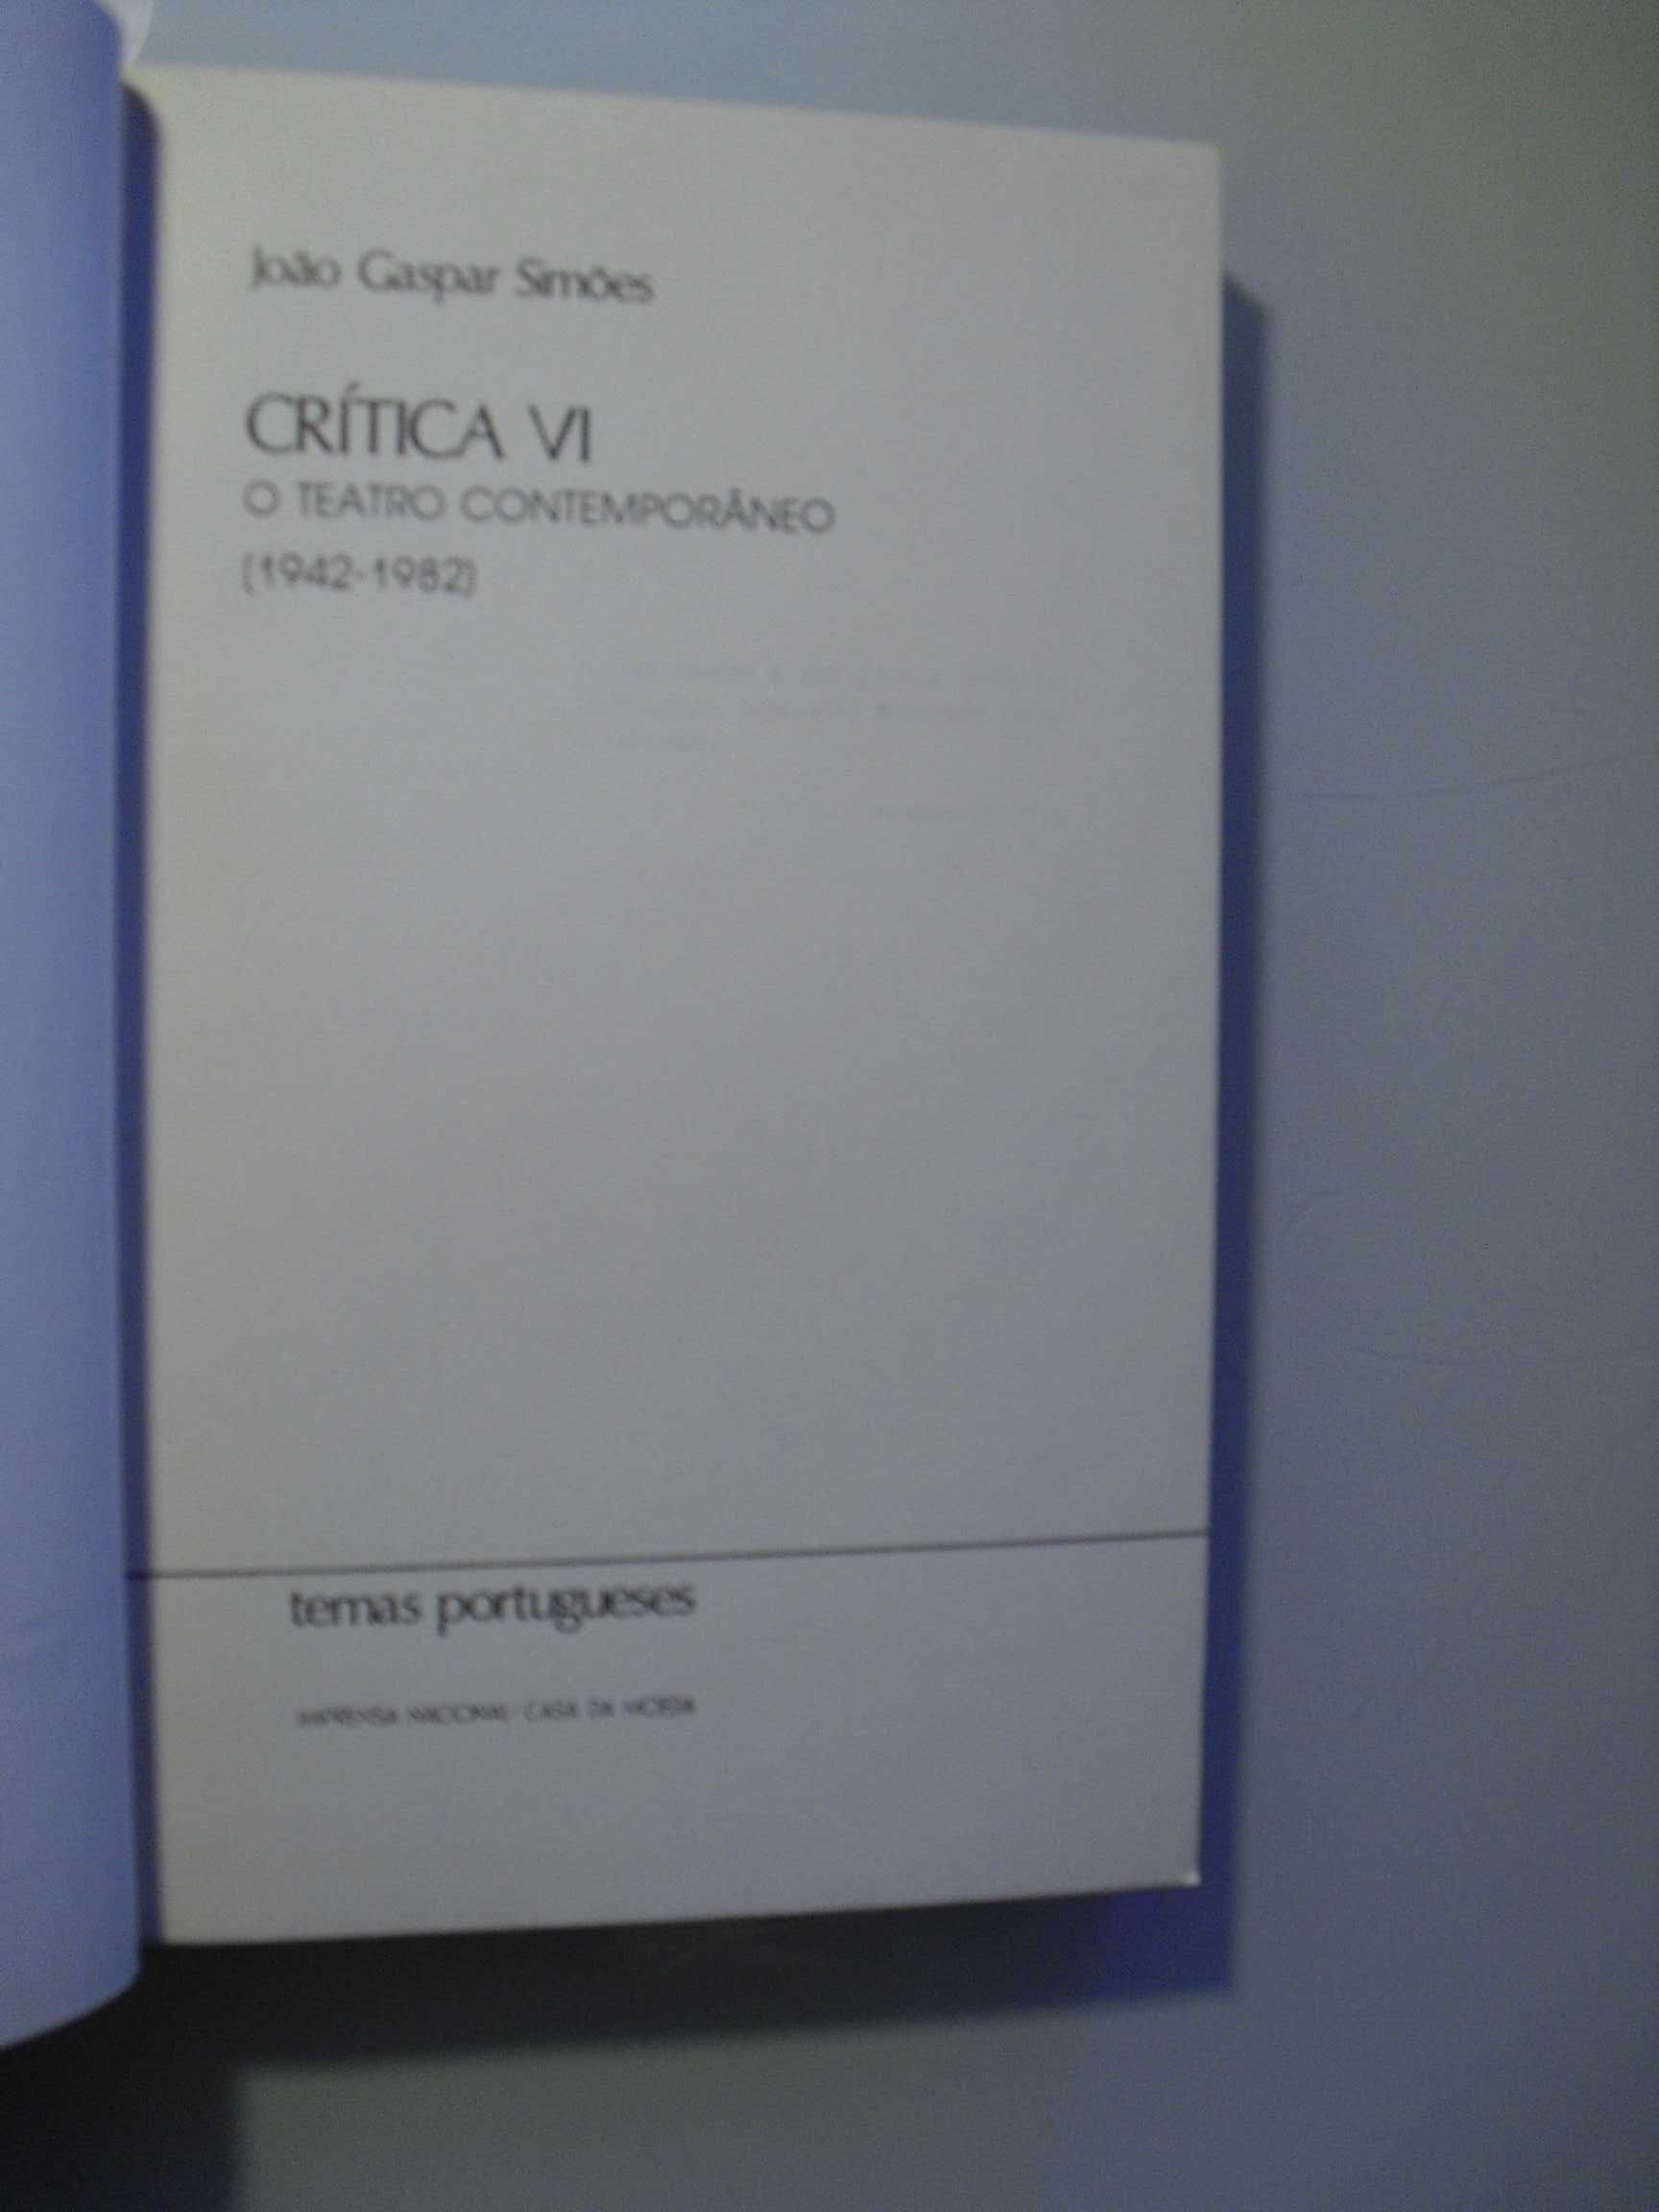 Simões (João Gaspar);Crítica VI-Teatro Contemporâneo